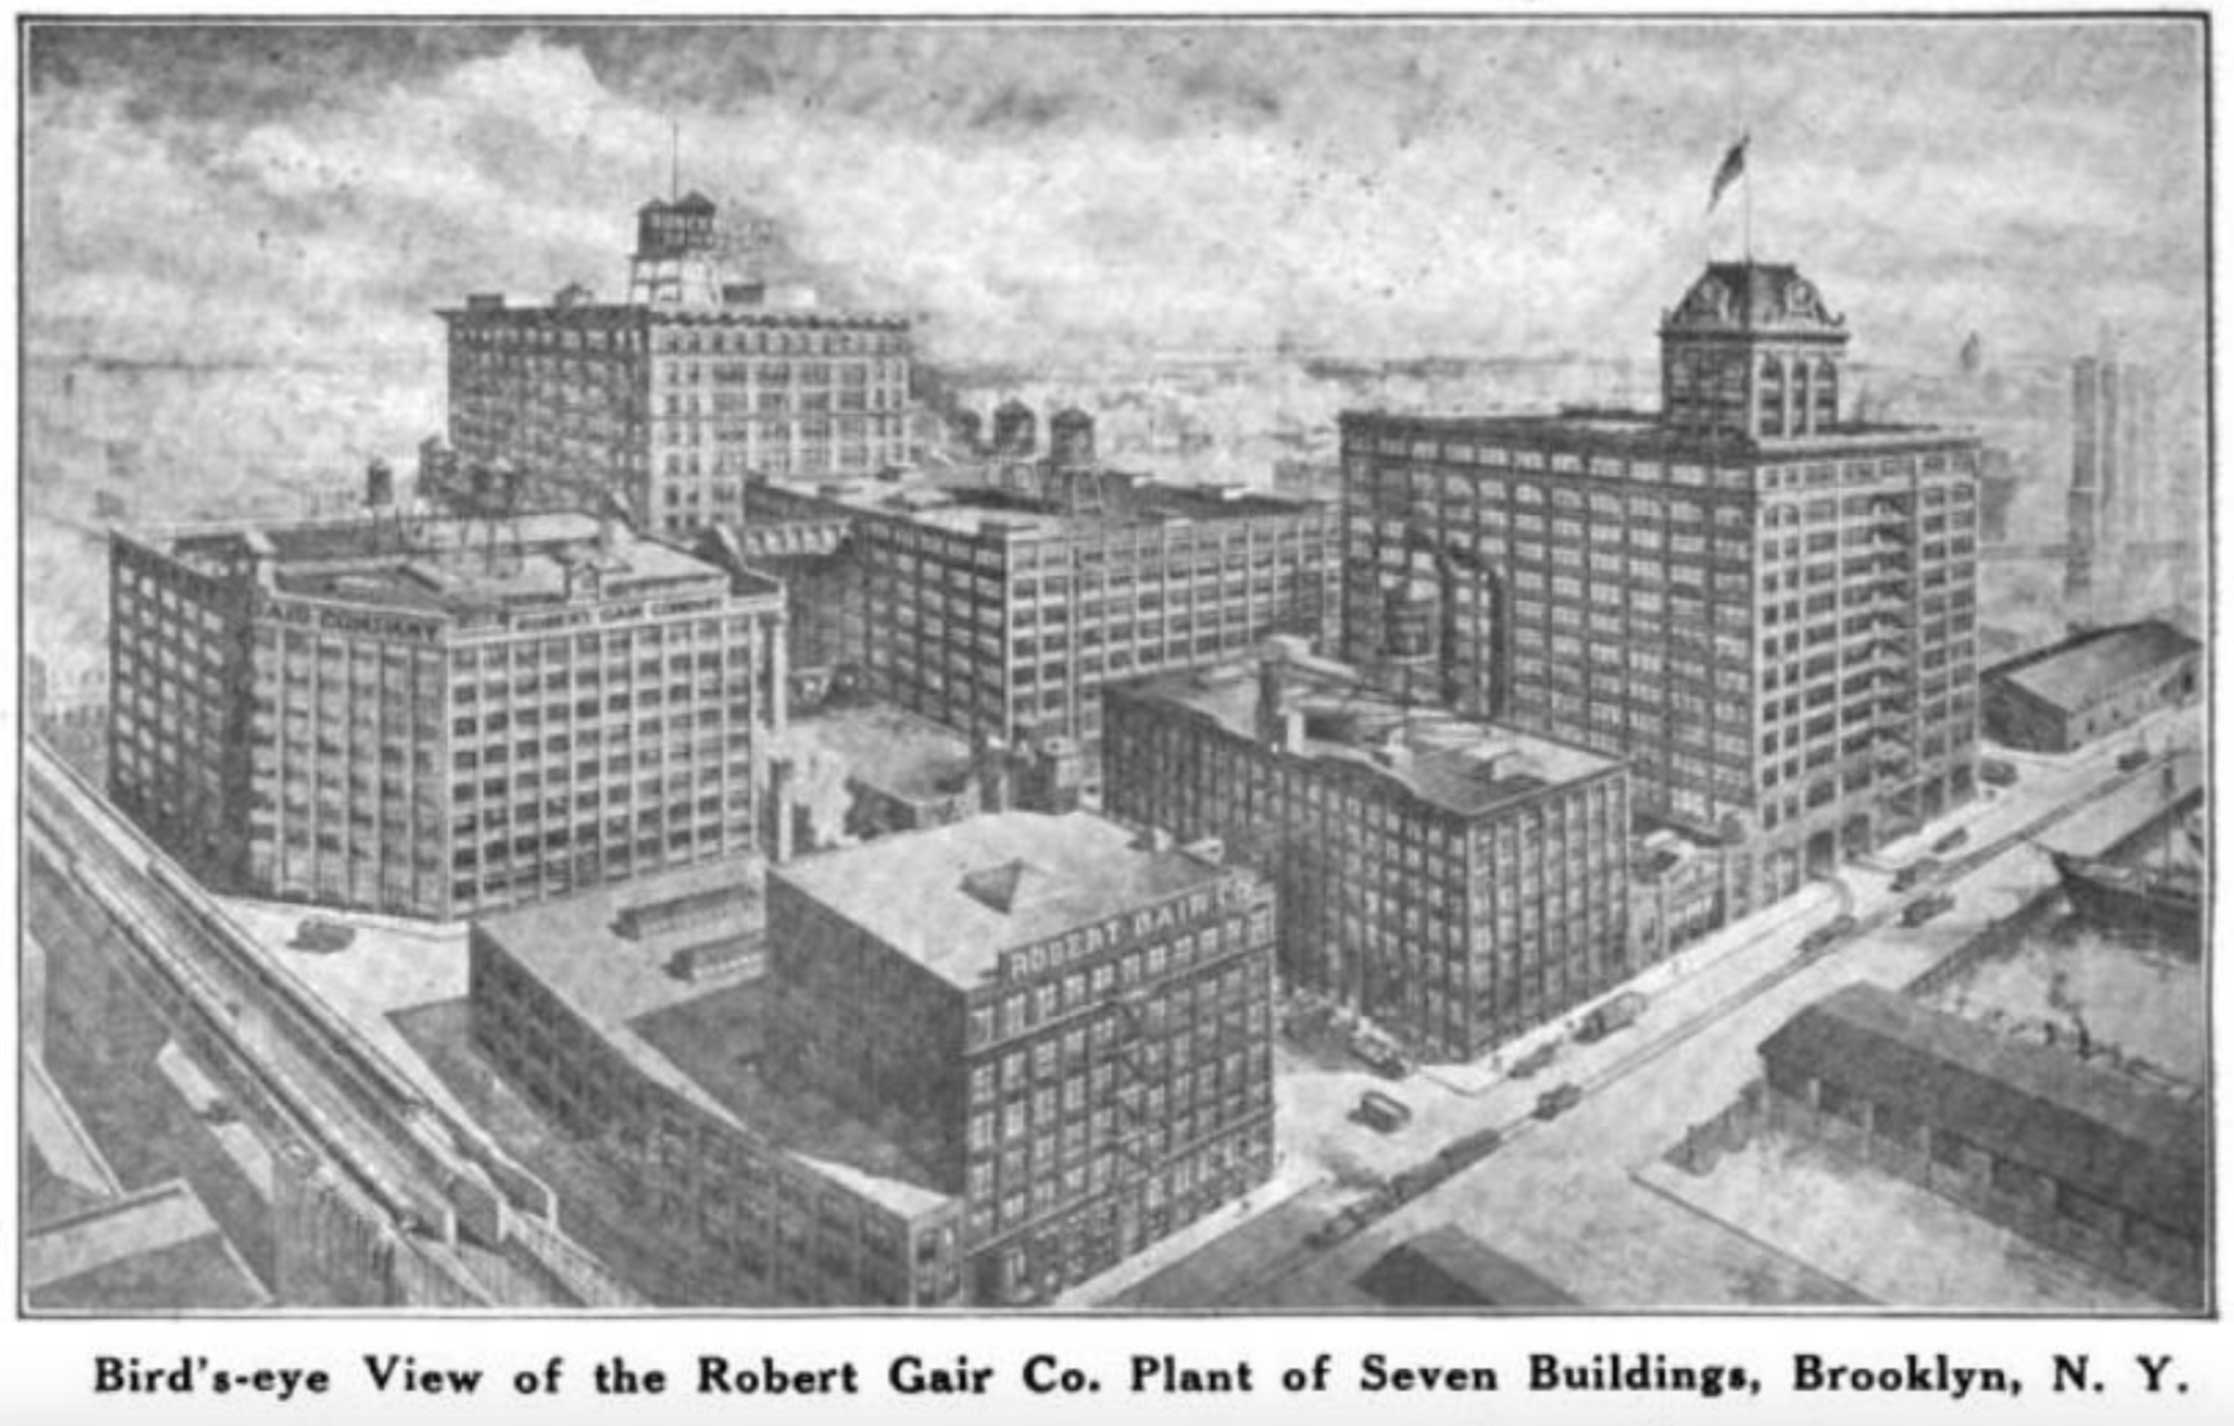 Bird's-eye View of the Robert Gair Co. Plant of Seven Buildings, Brooklyn, N.Y.